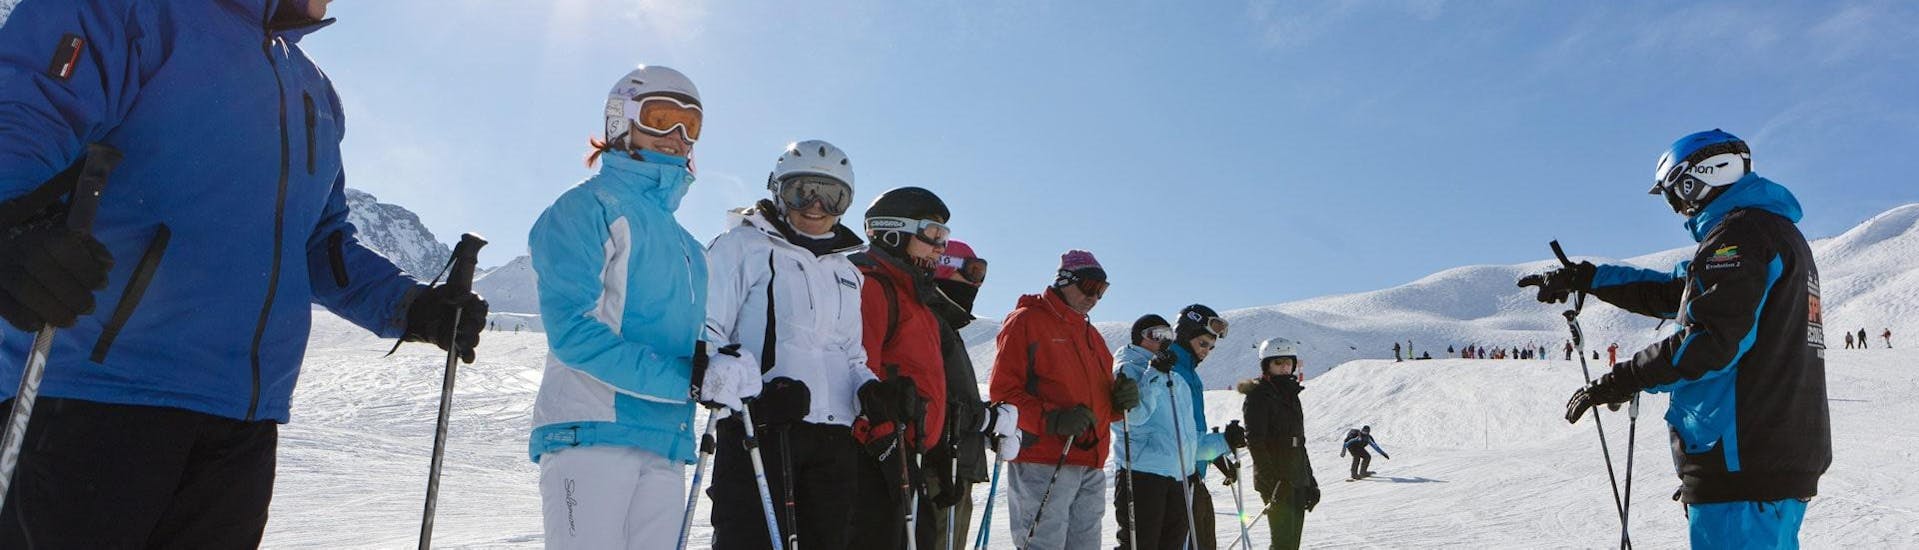 Volwassenen nemen deel aan skilessen voor volwassenen voor alle niveaus - Arc 1950 met Evolution 2 Spirit - Arc 1950 & Villaroger.